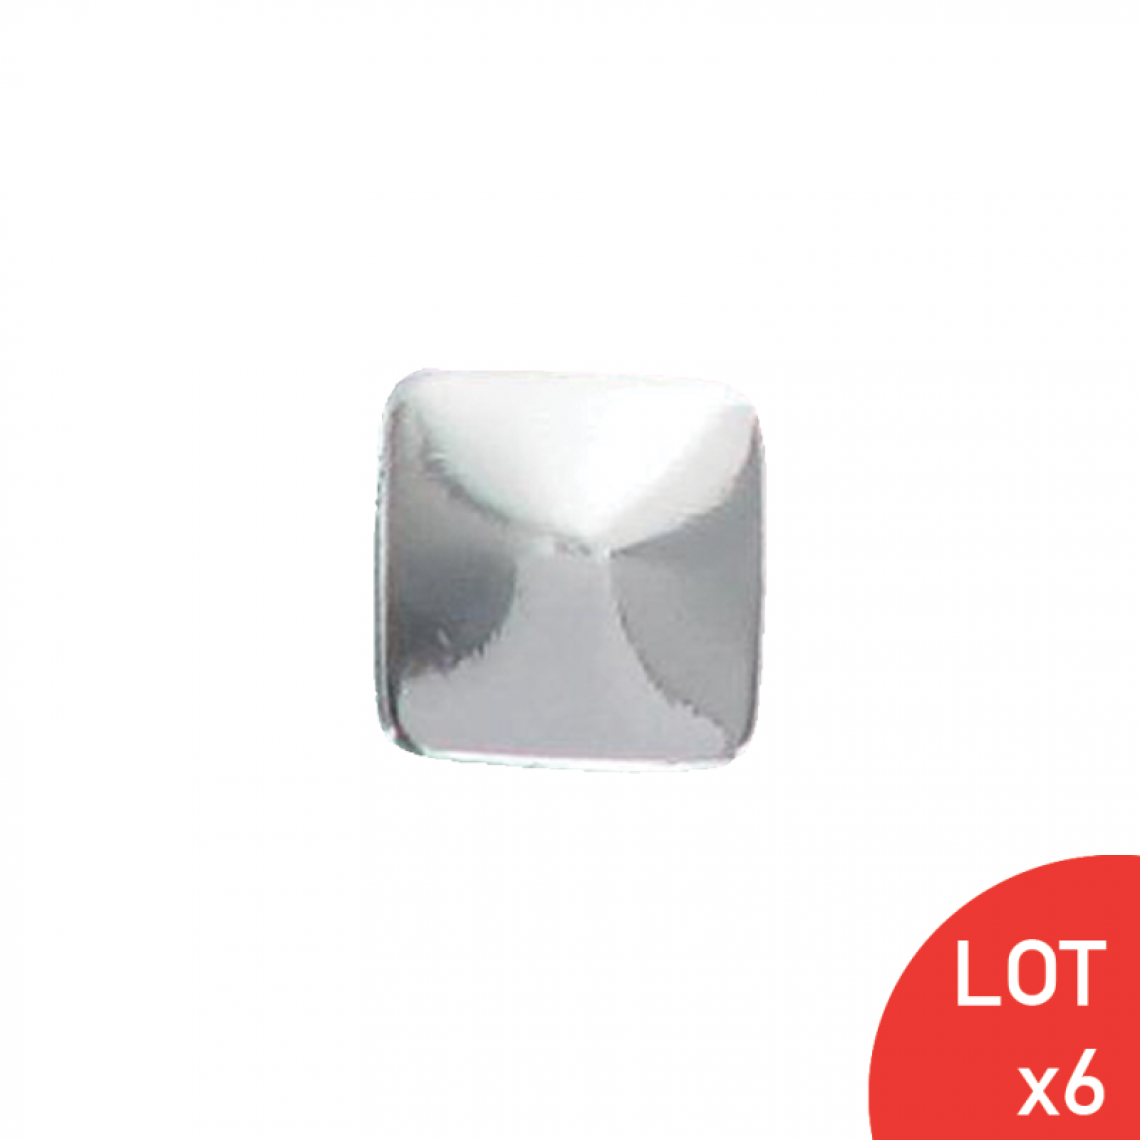 Sama - Bouton de meuble pointe diamant chromé carré 20X20 mm LOT DE 6 - Poignée de meuble